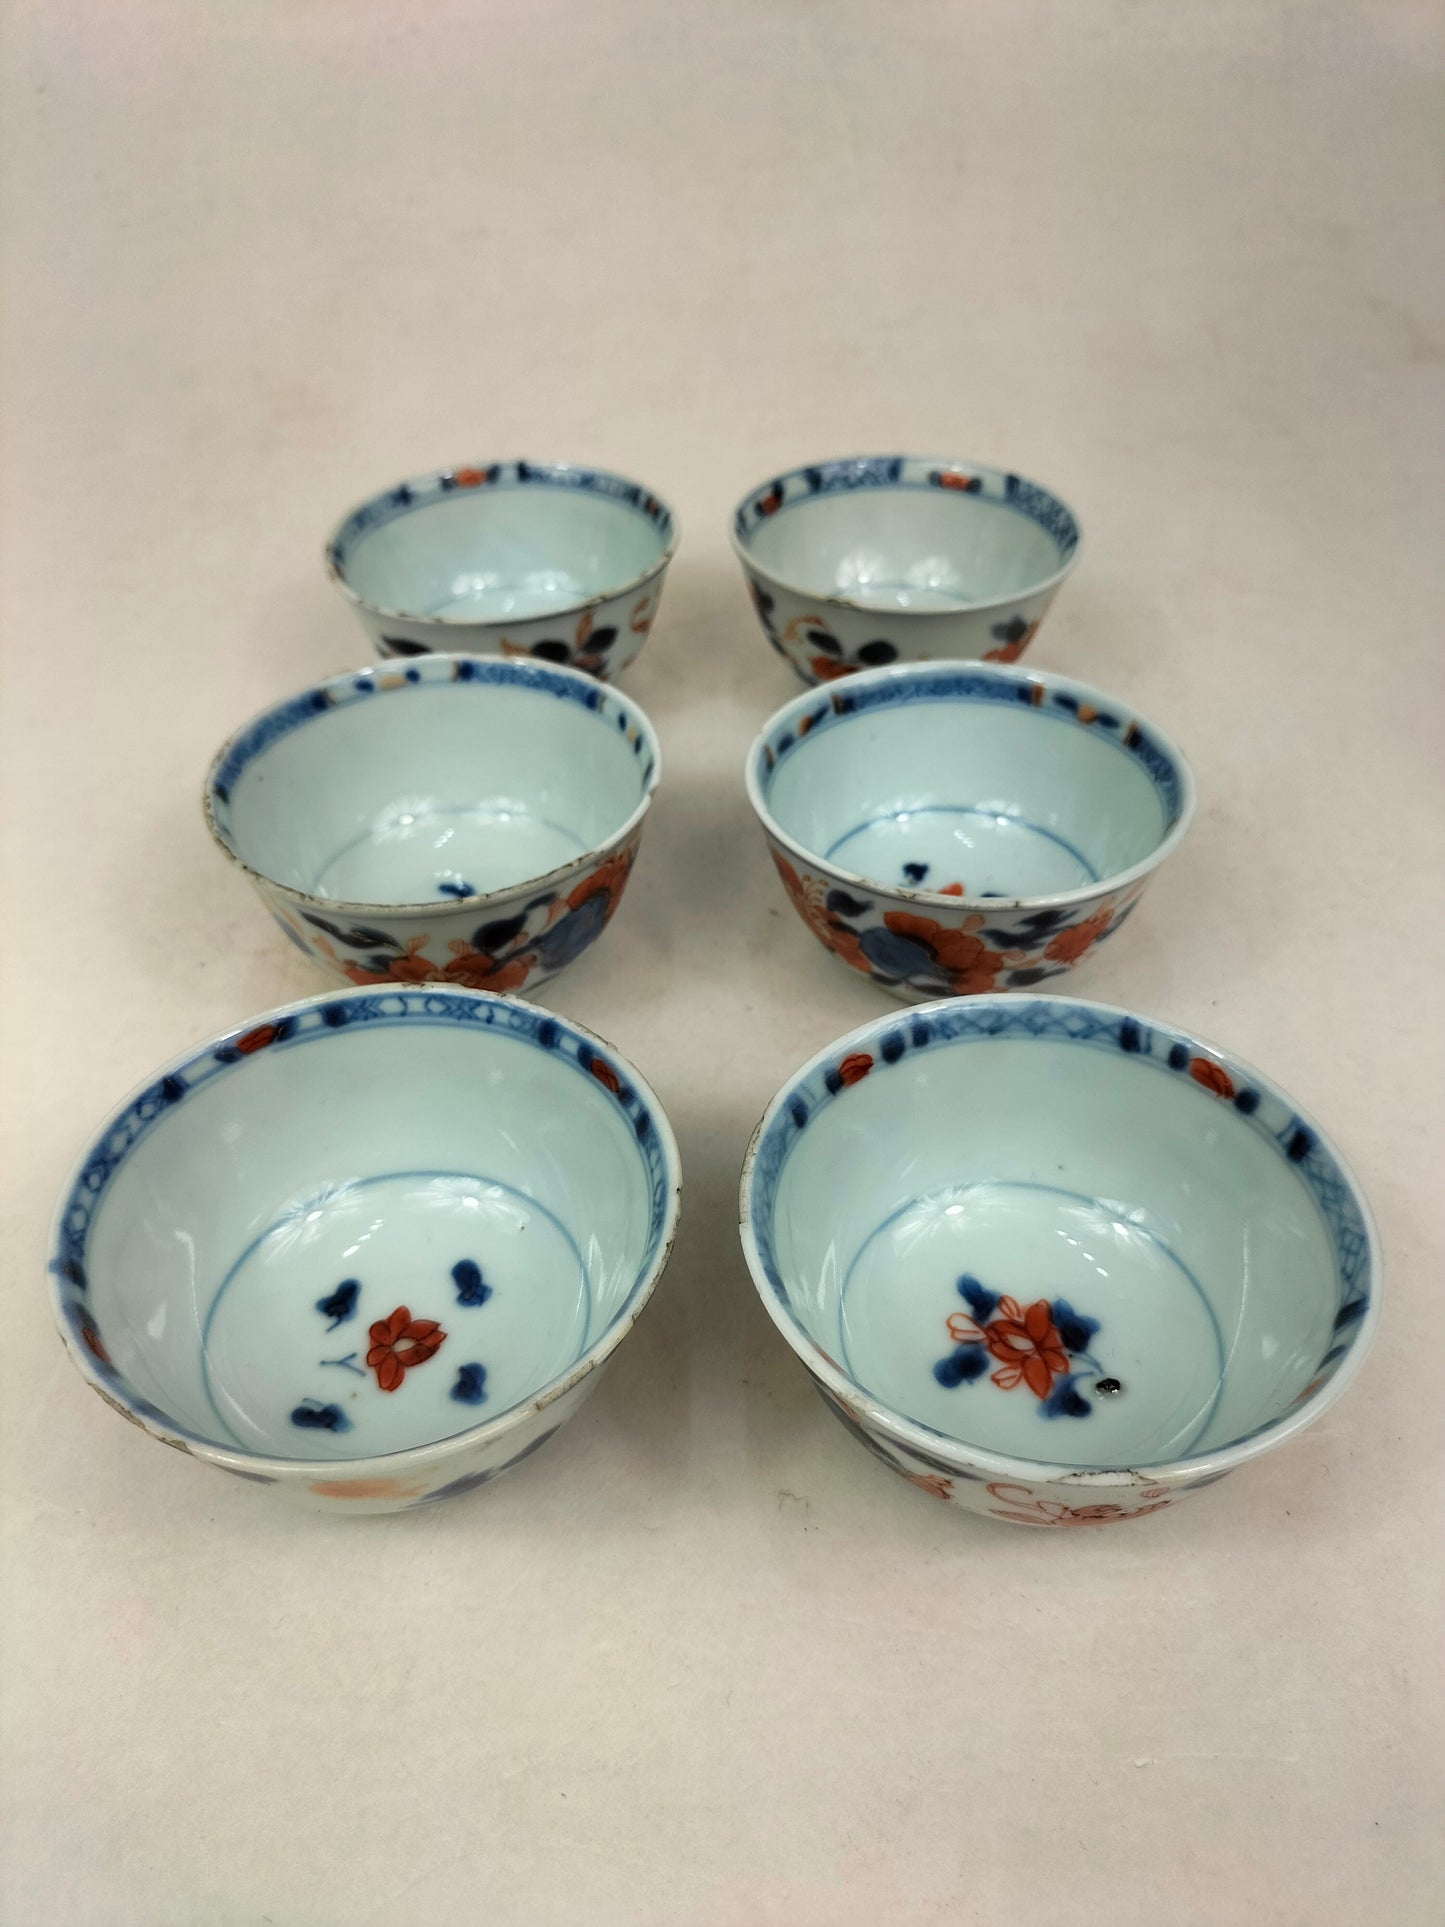 مجموعة مكونة من 6 فناجين شاي وصحون إيماري عتيقة // أسرة تشينغ - كانغشي - القرن الثامن عشر